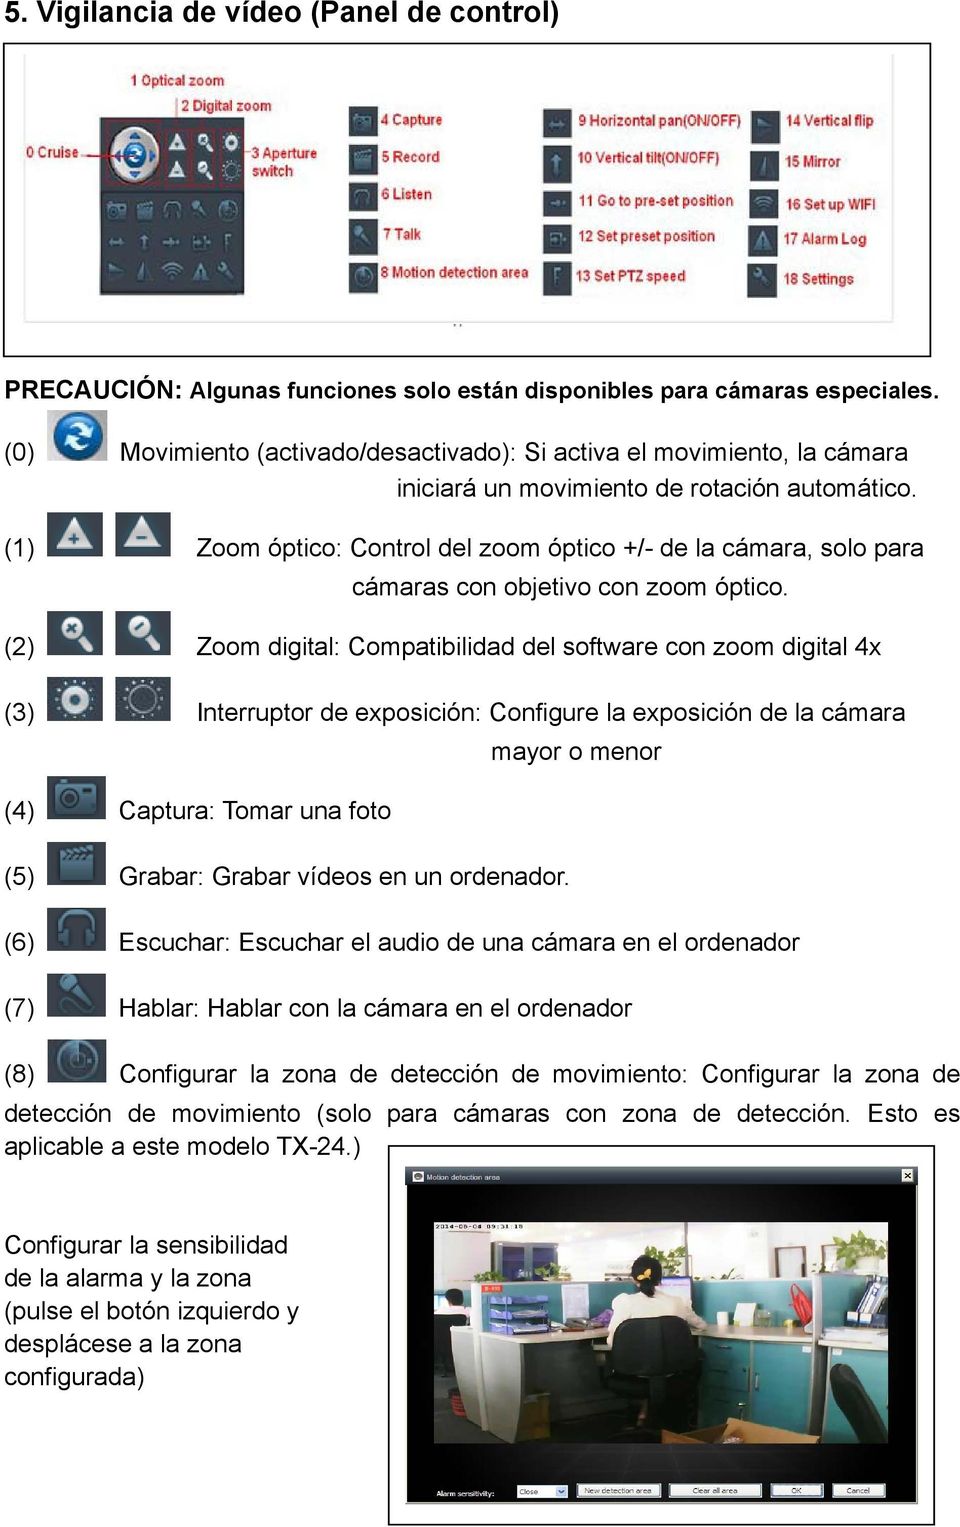 (1) Zoom óptico: Control del zoom óptico +/- de la cámara, solo para cámaras con objetivo con zoom óptico.